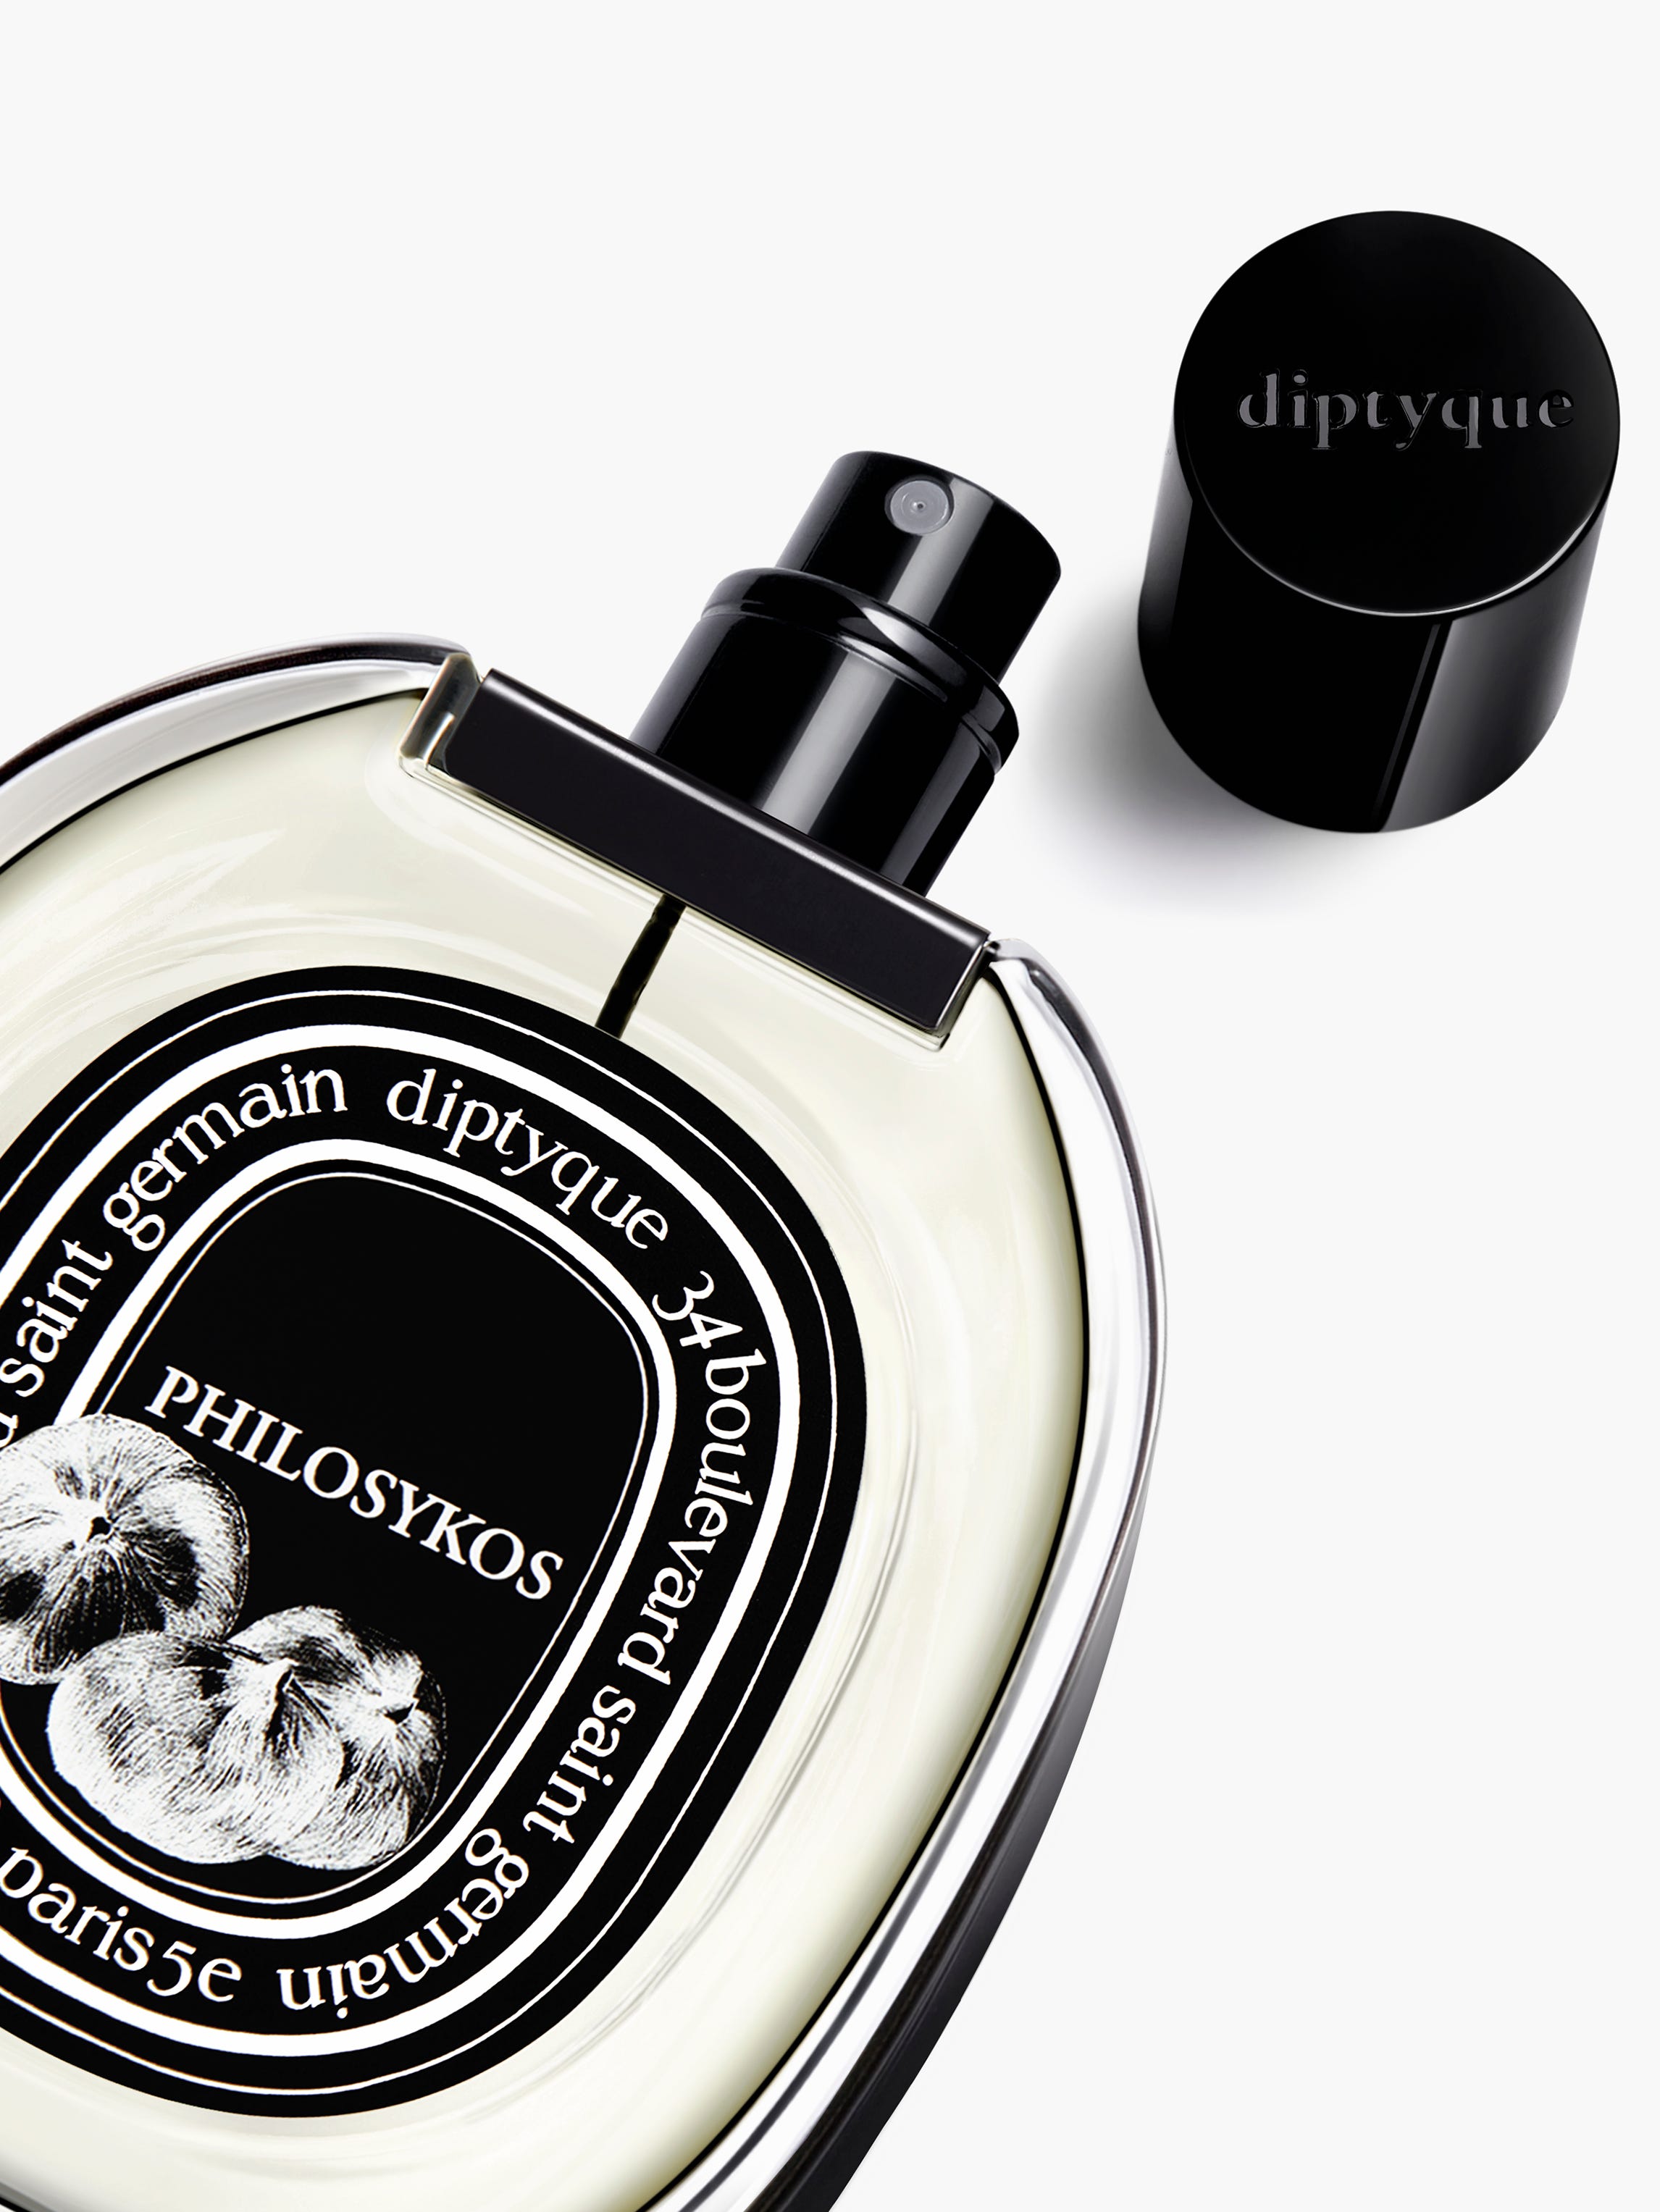 Philosykos - Eau de parfum 75ml | Diptyque Paris